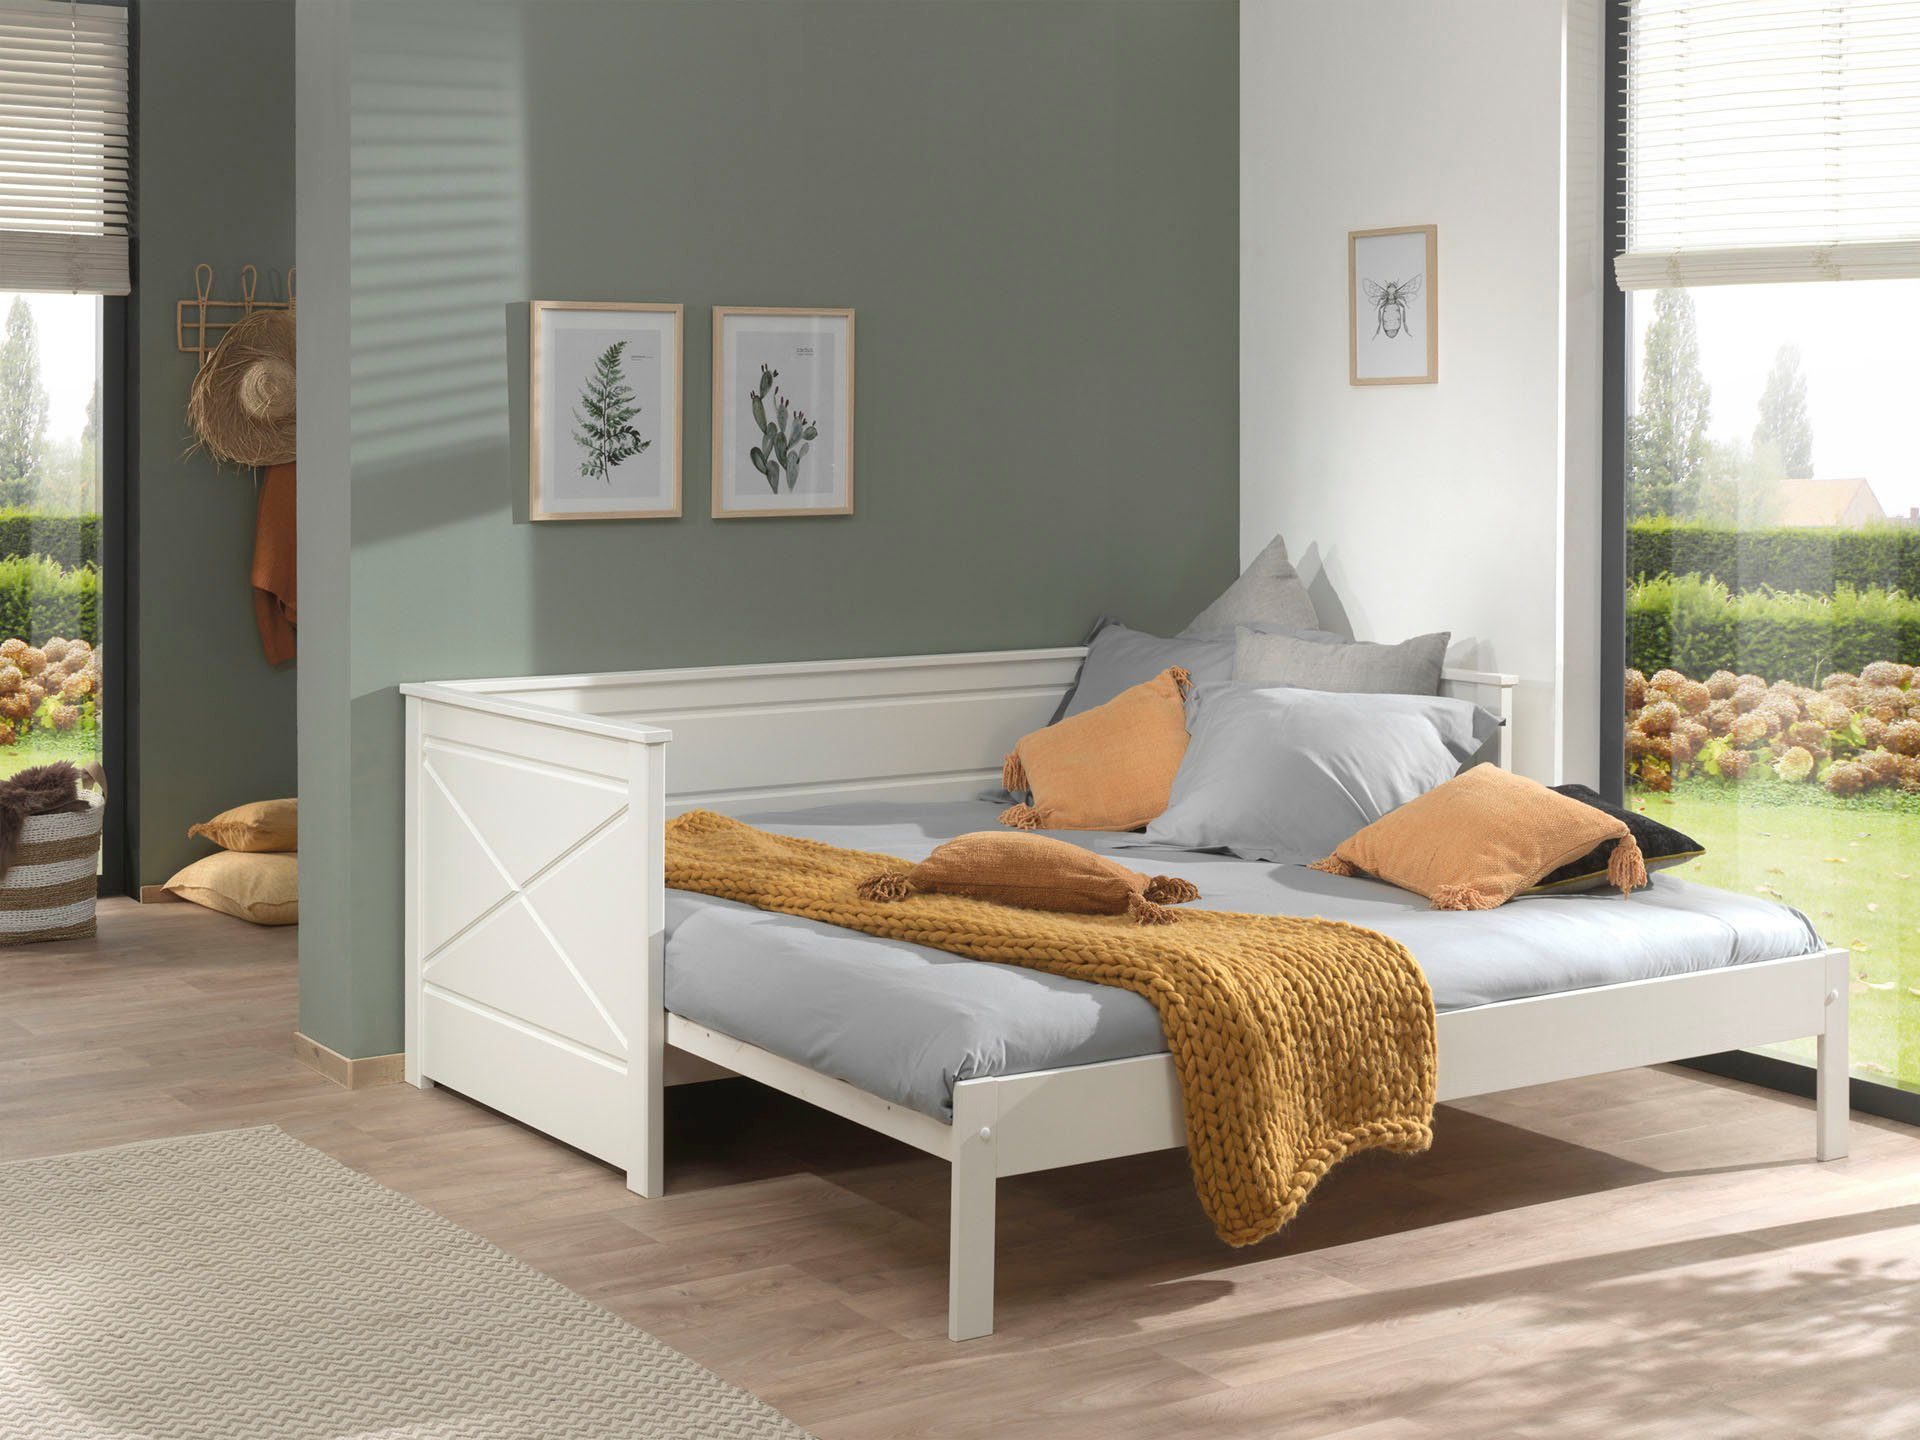 Vipack Bett Vipack ausziehen Ausf. lackiert auf cm, 90x200 Weiß LF cm, 180x200 Pino, Kojenbett